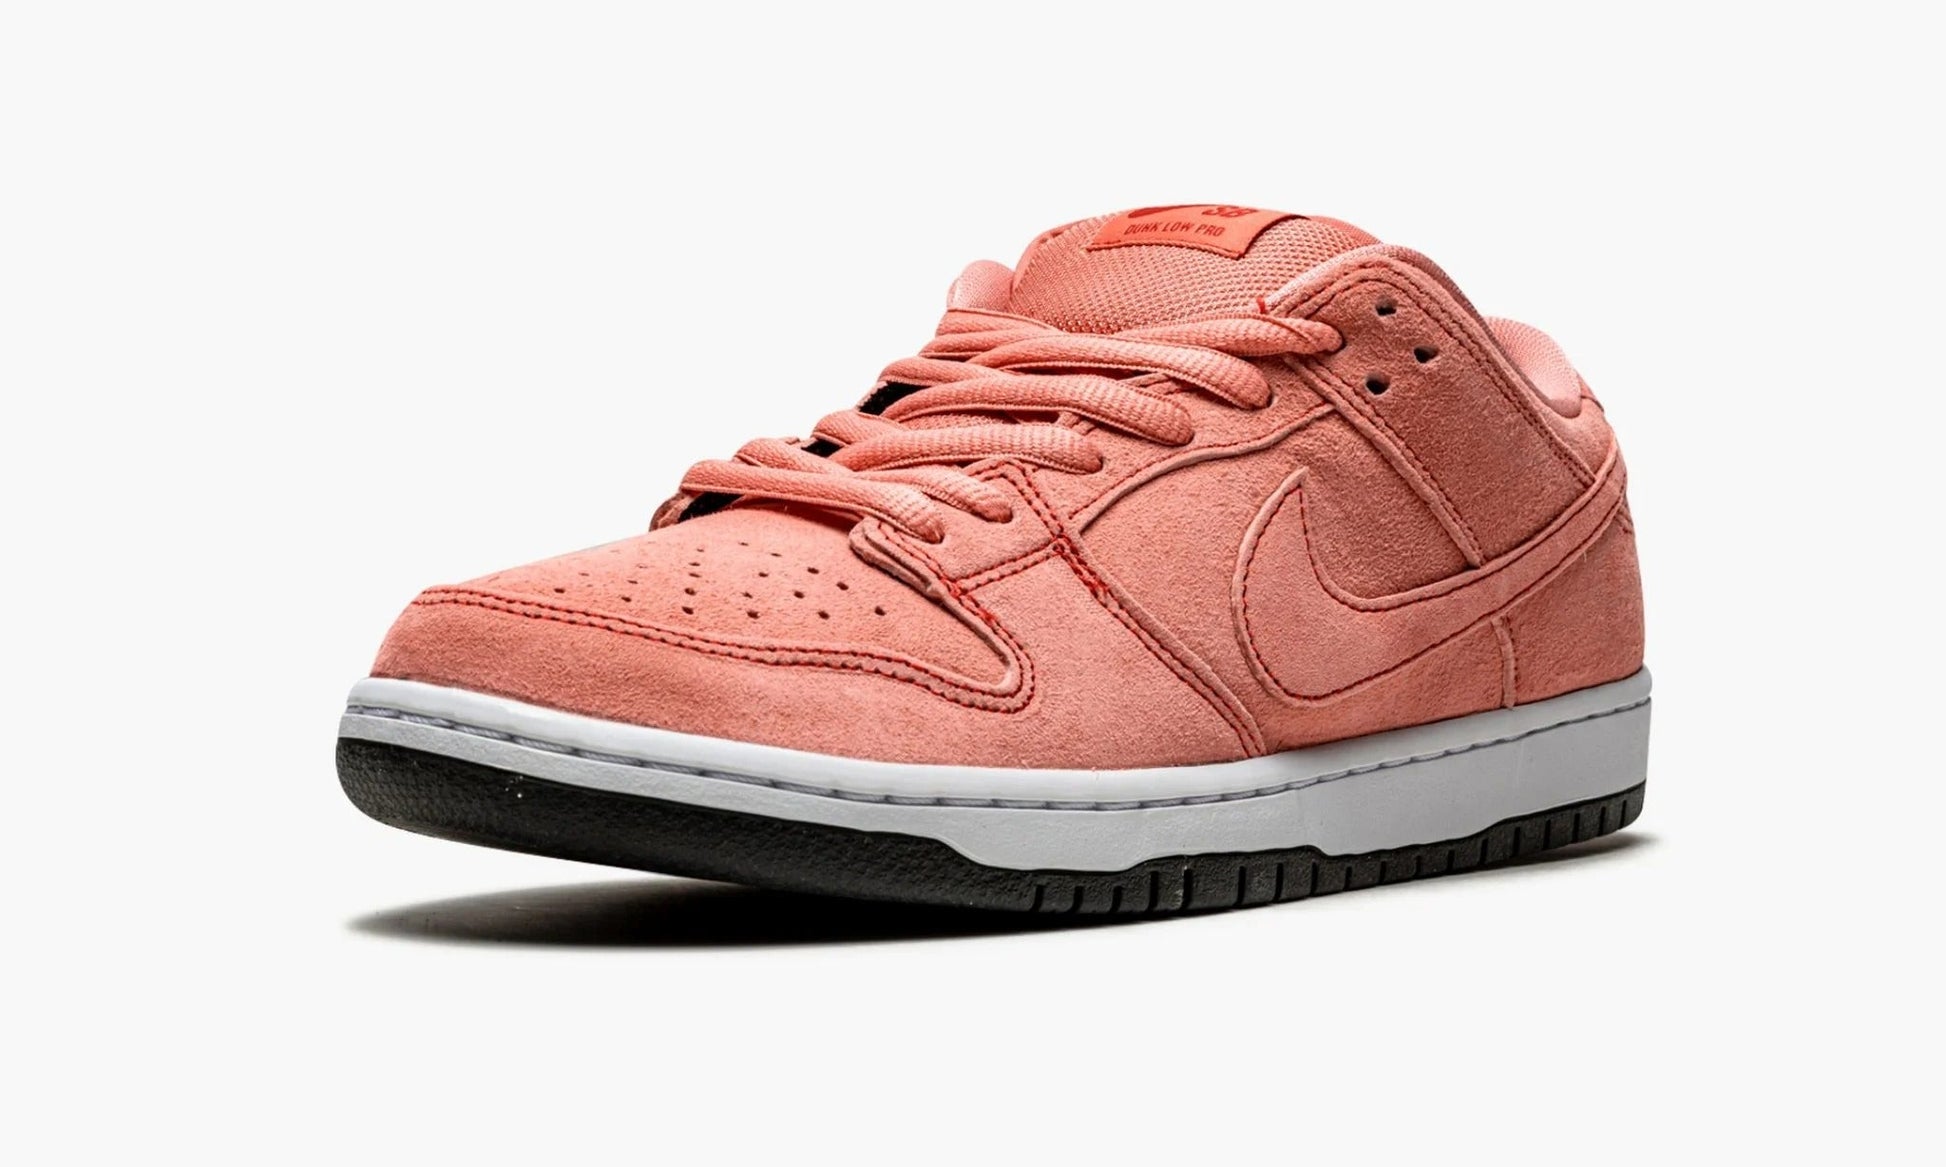 Nike Dunk SB Low Pink Pig - CV1655 600 | The Sortage